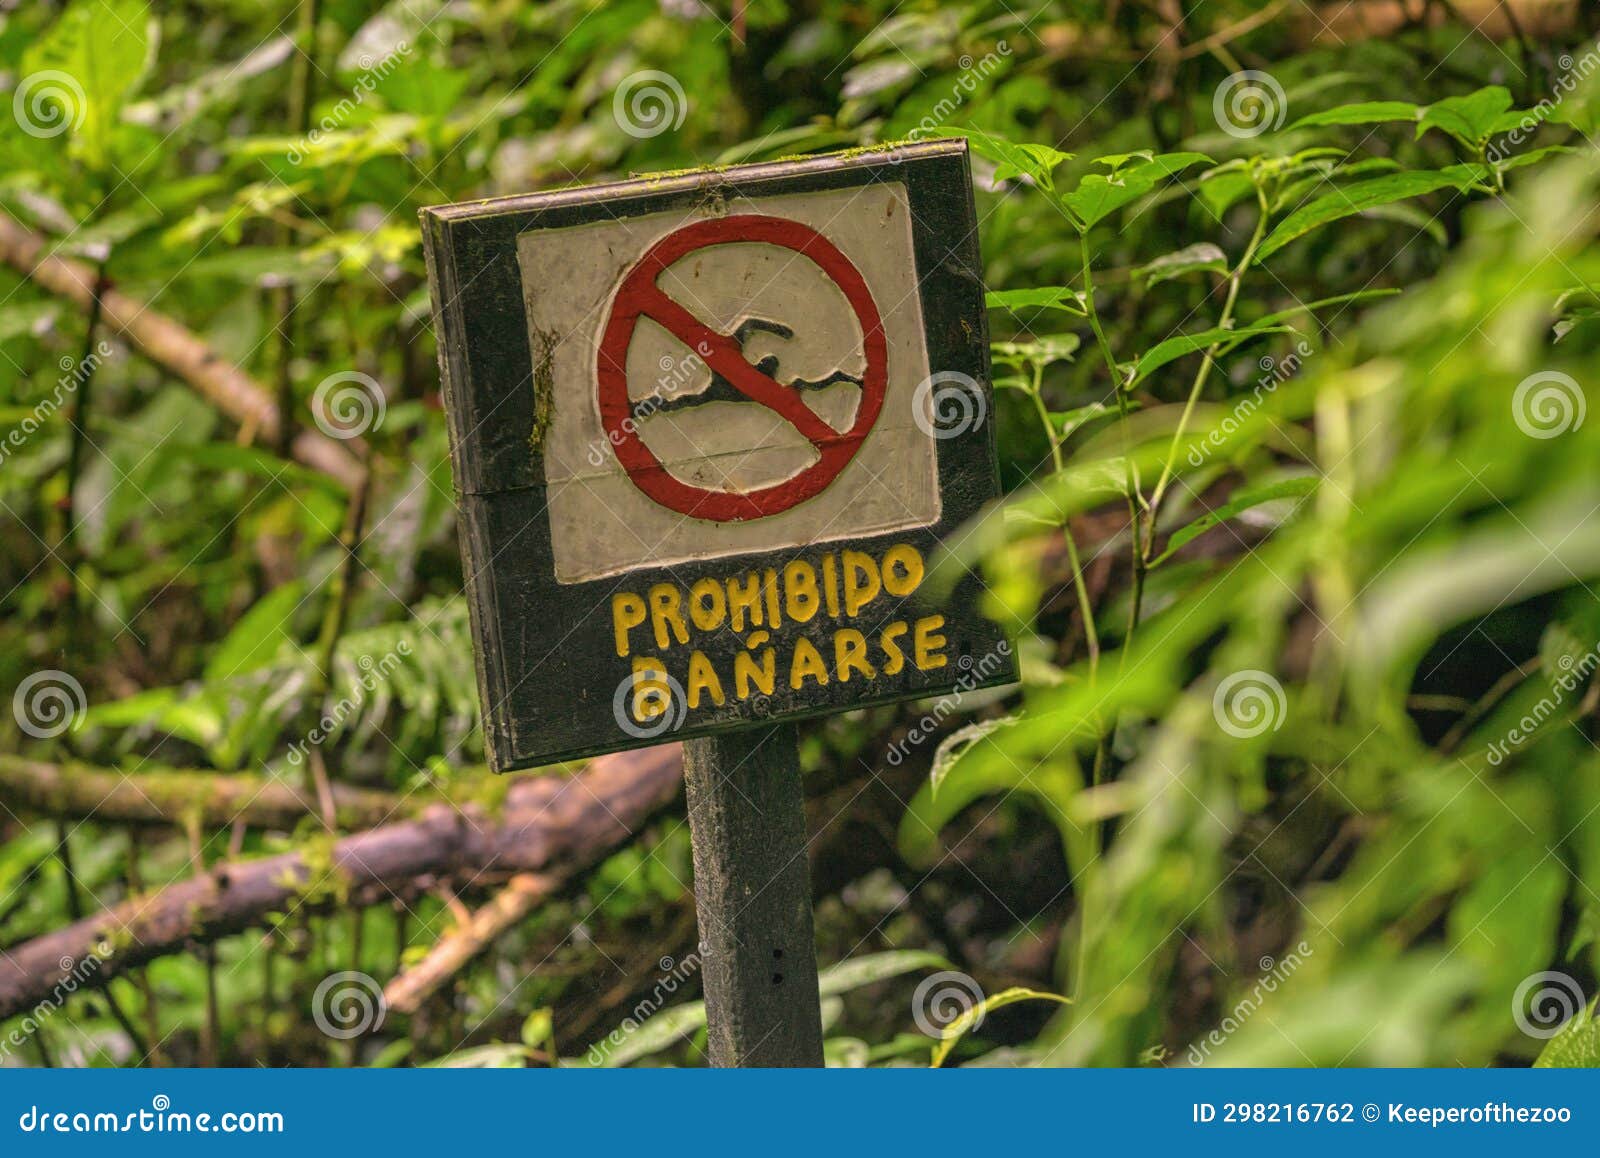 prohibido banarse sign in the foliage